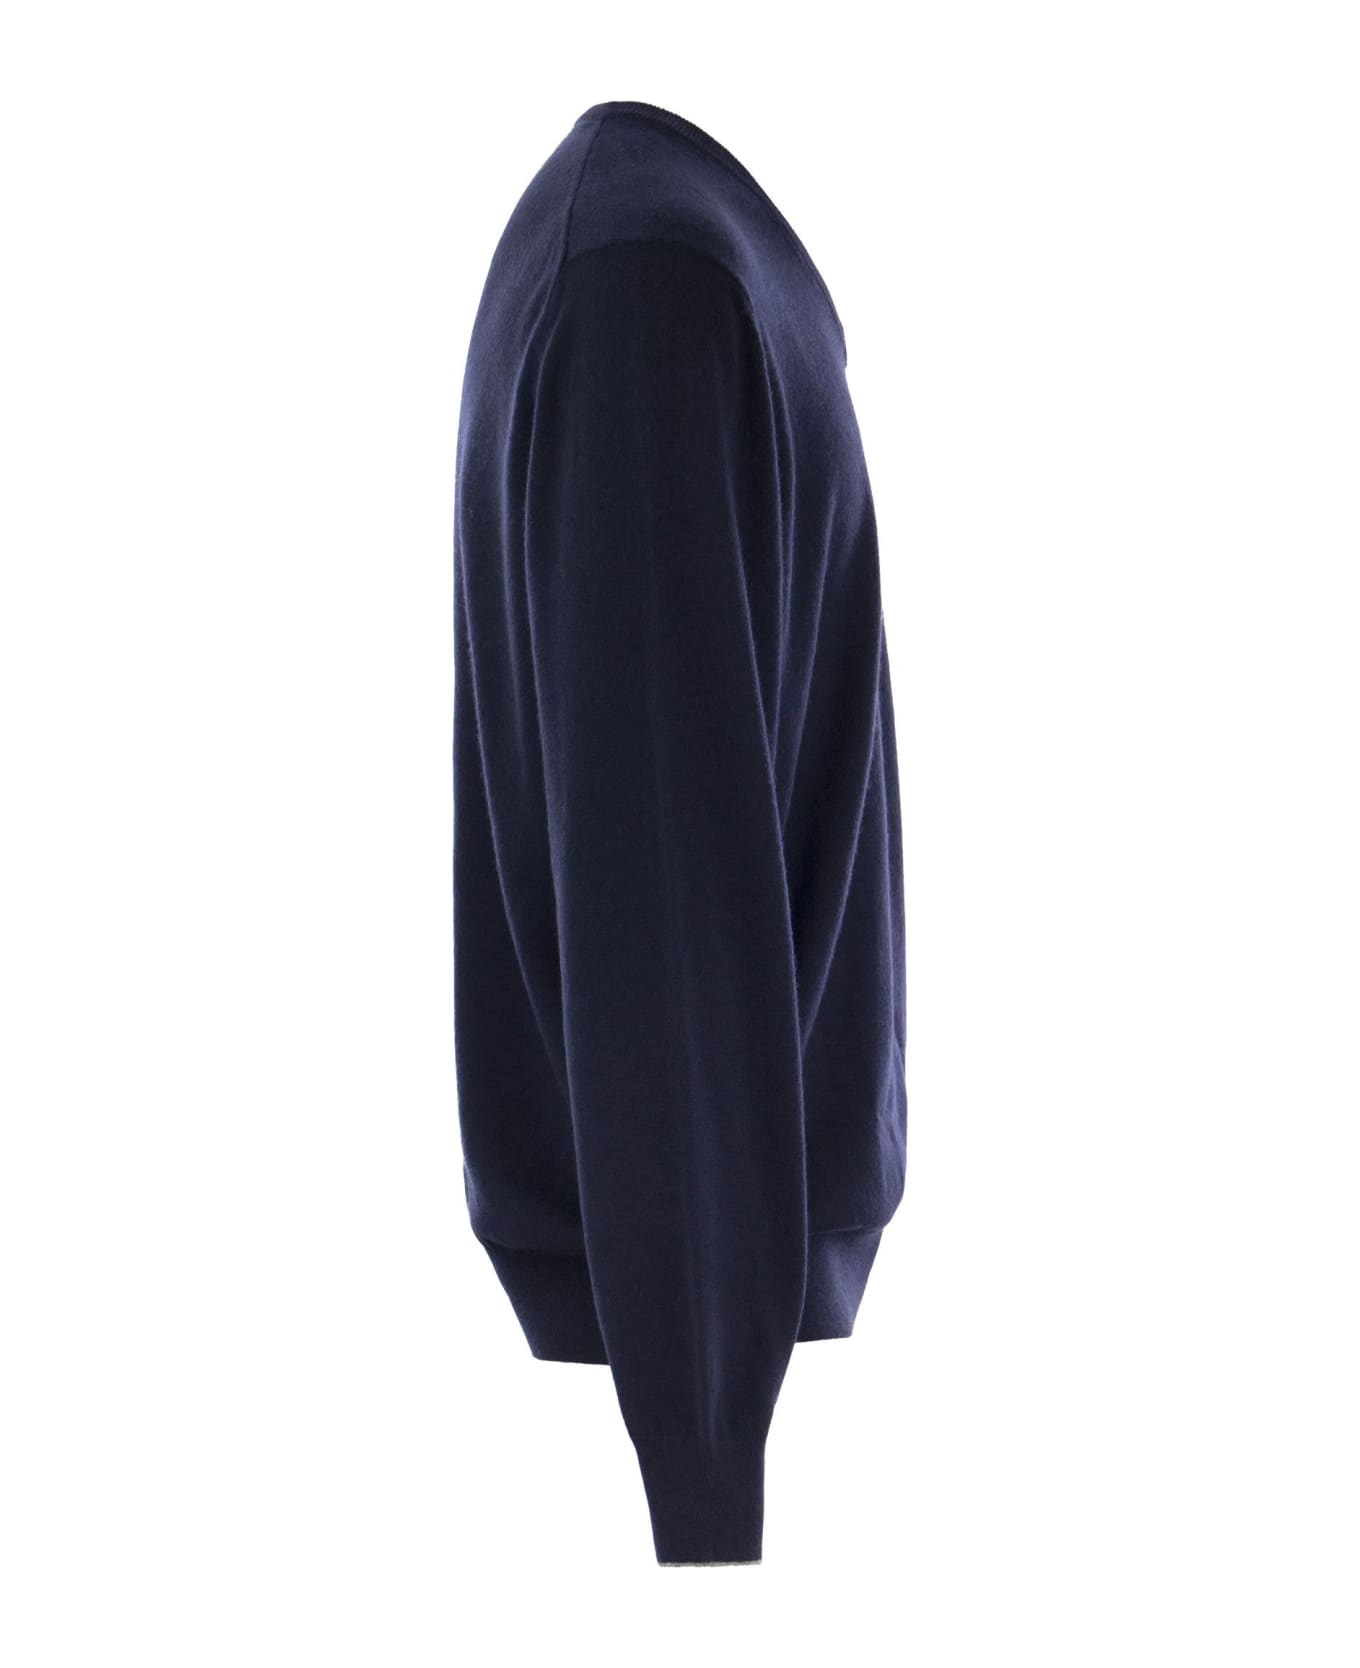 Brunello Cucinelli Cashmere Sweater - Navy Blue